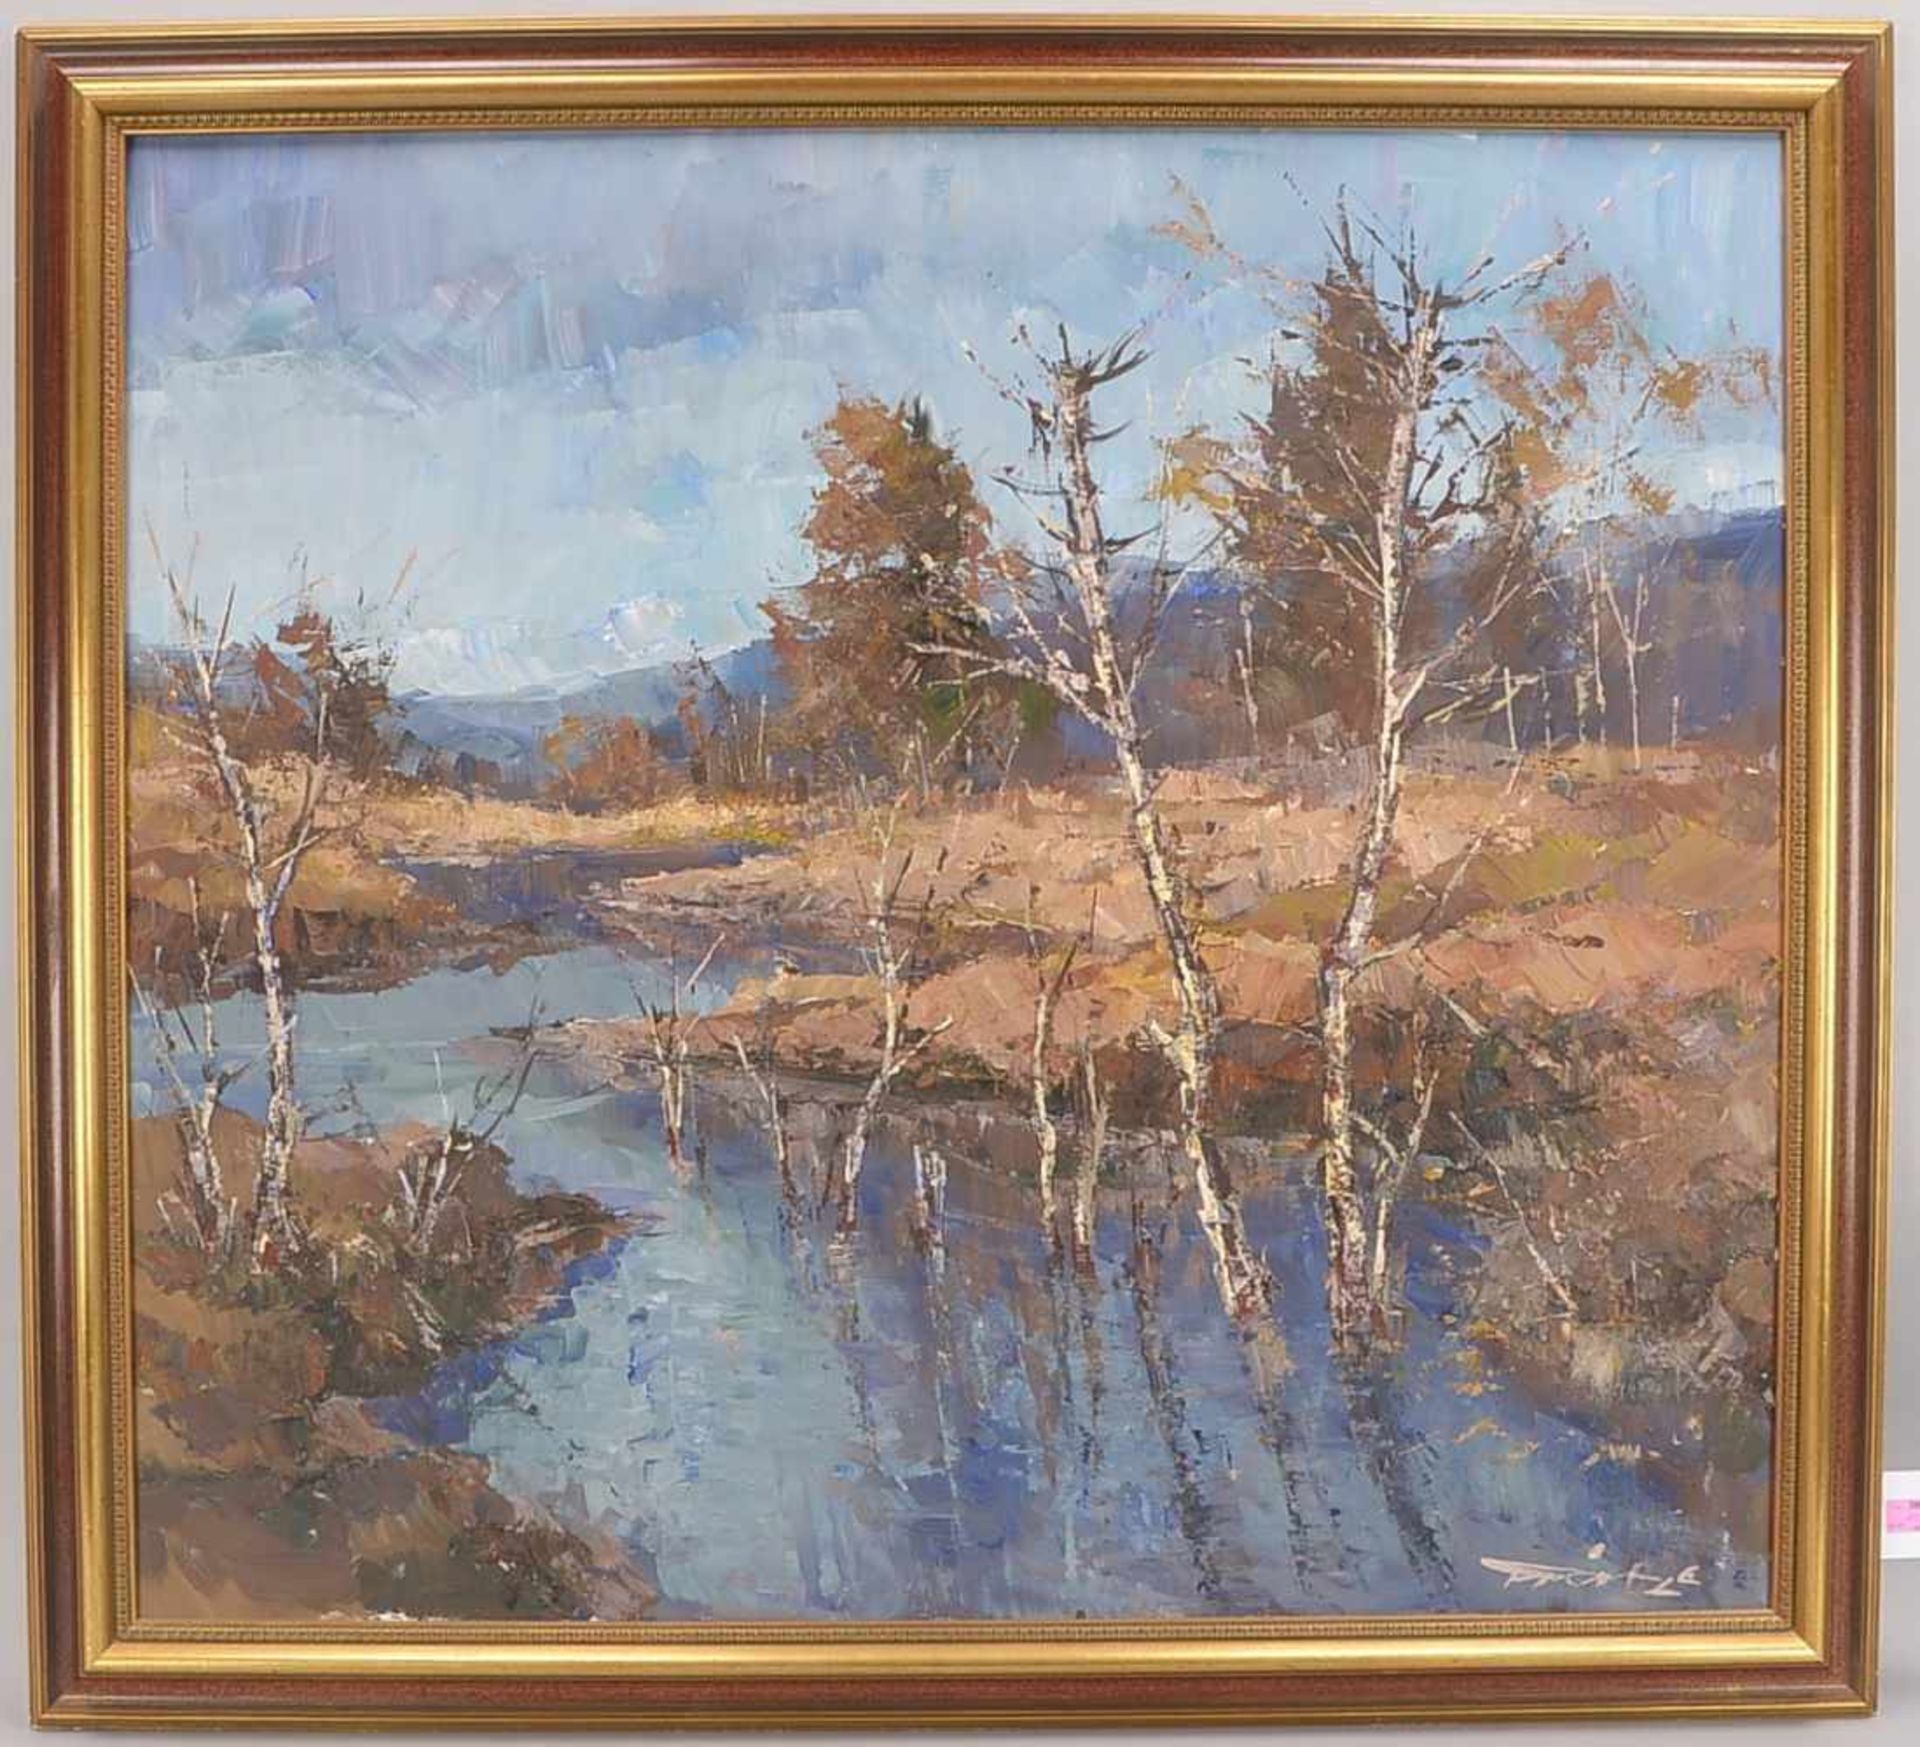 Trätzl, Robert (1913 - 1986), 'Moorbach', Öl/Lw, unten rechts signiert; Bildmaße 90 x 100 cm,